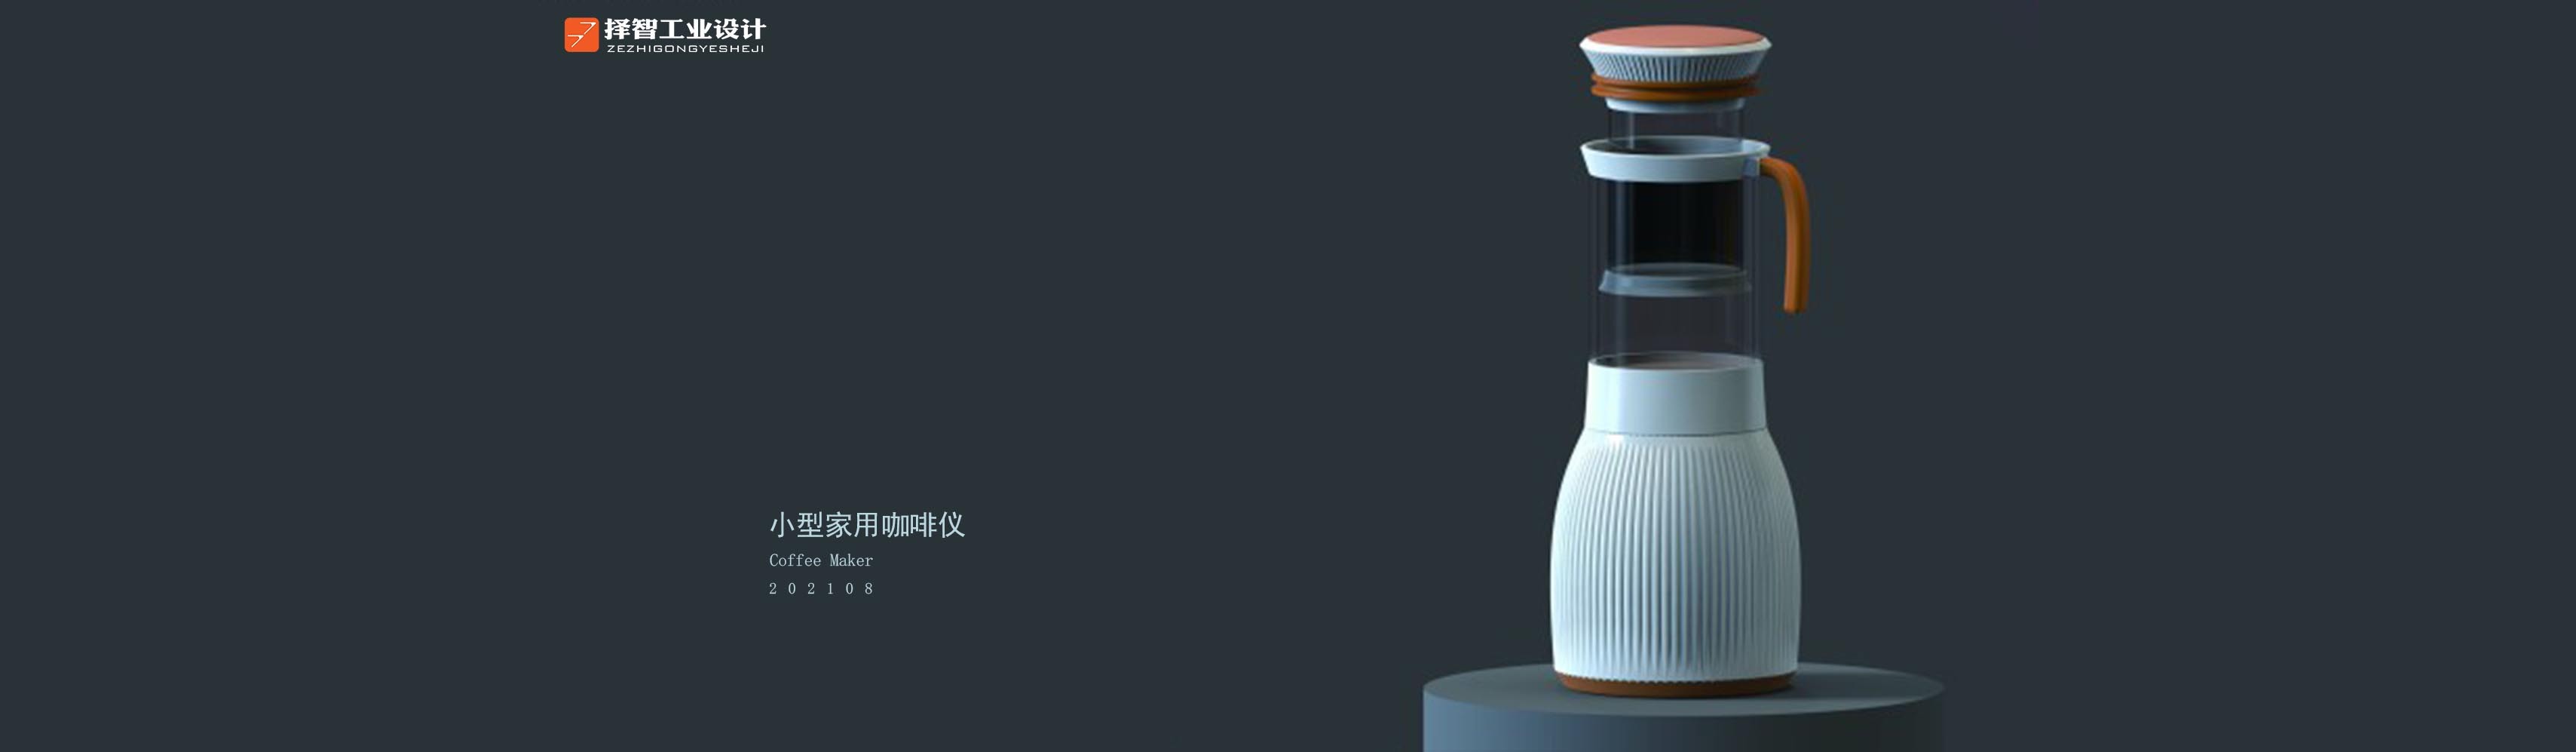 上海苏州产品设计 工业产品外观设计 结构设计 智能咖啡机产品设计